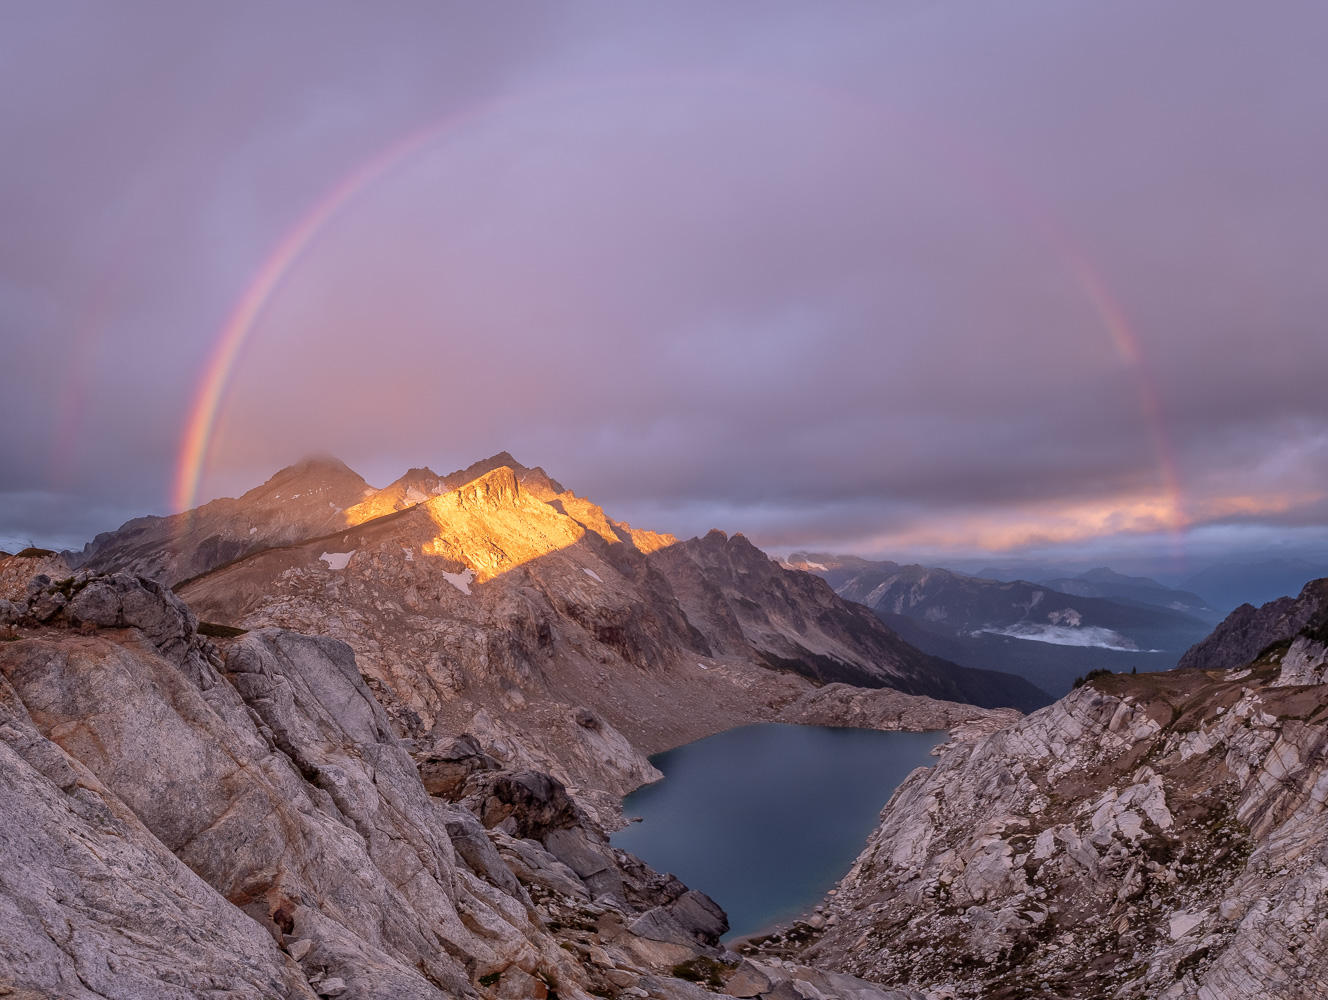  Napeequa Peak, Cirque Mountain, and Triad Lake at sunrise with rainbow. 